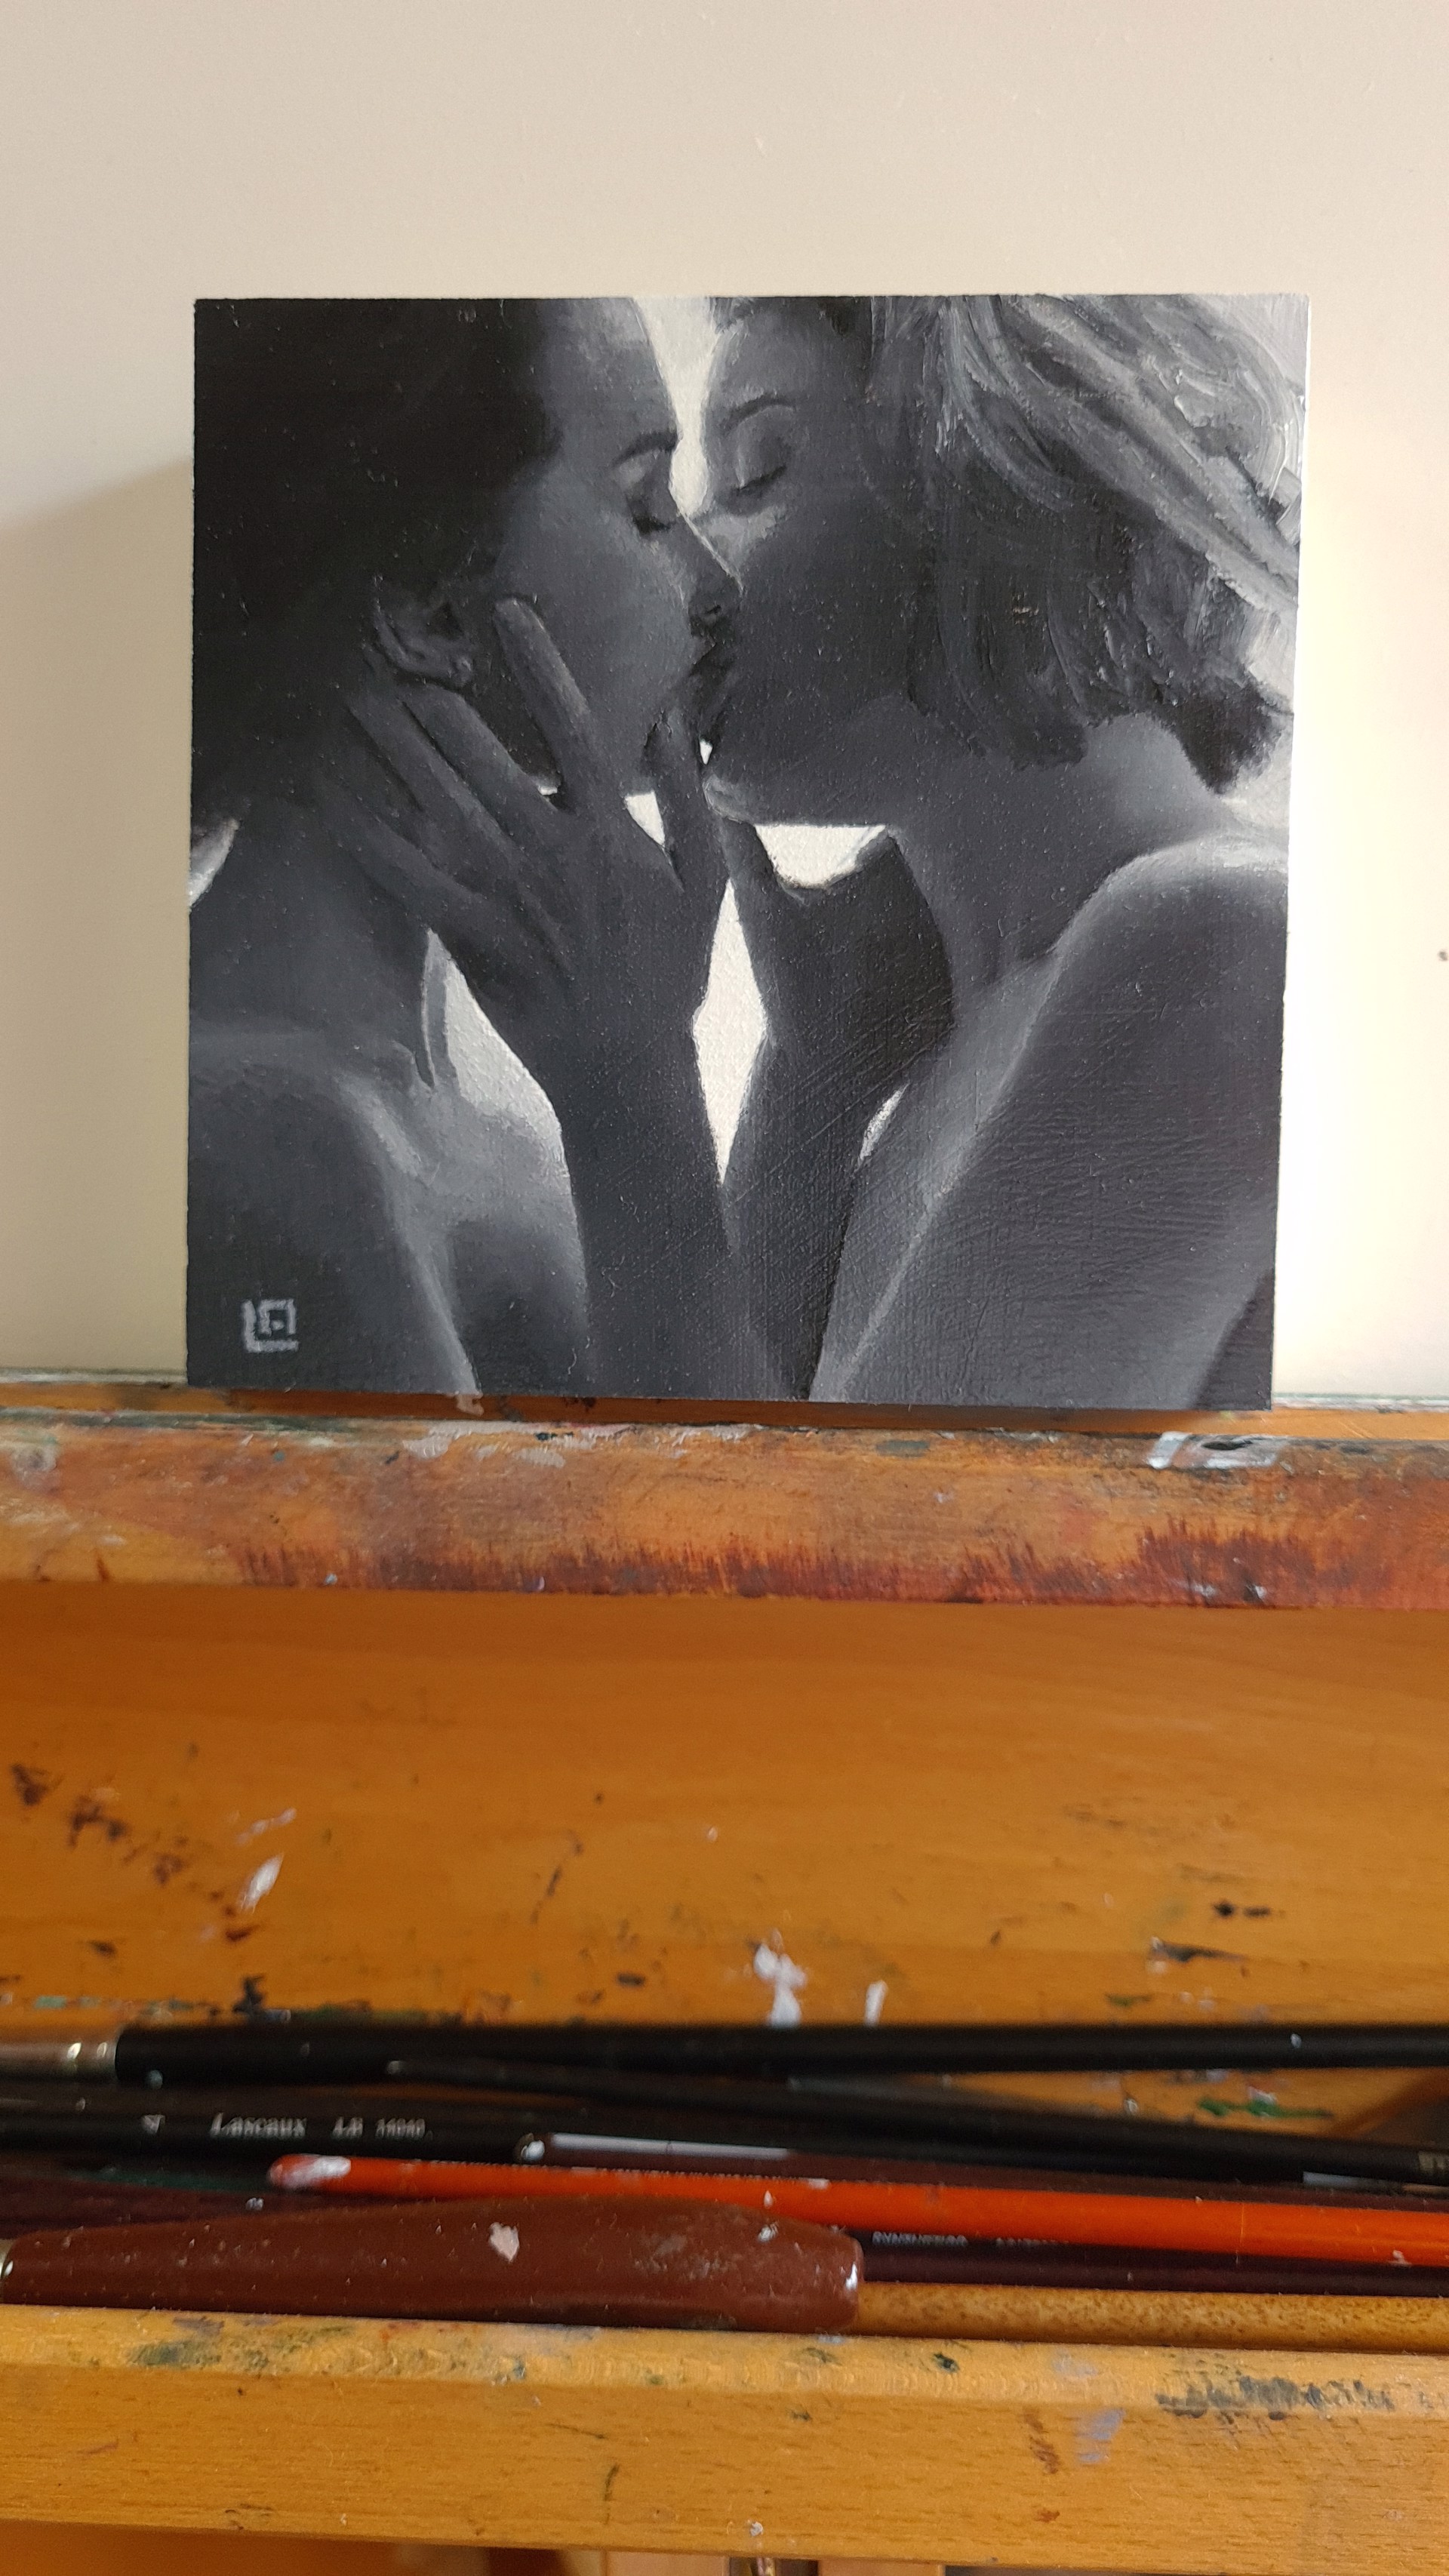 The Kiss #9 by Linda Adair